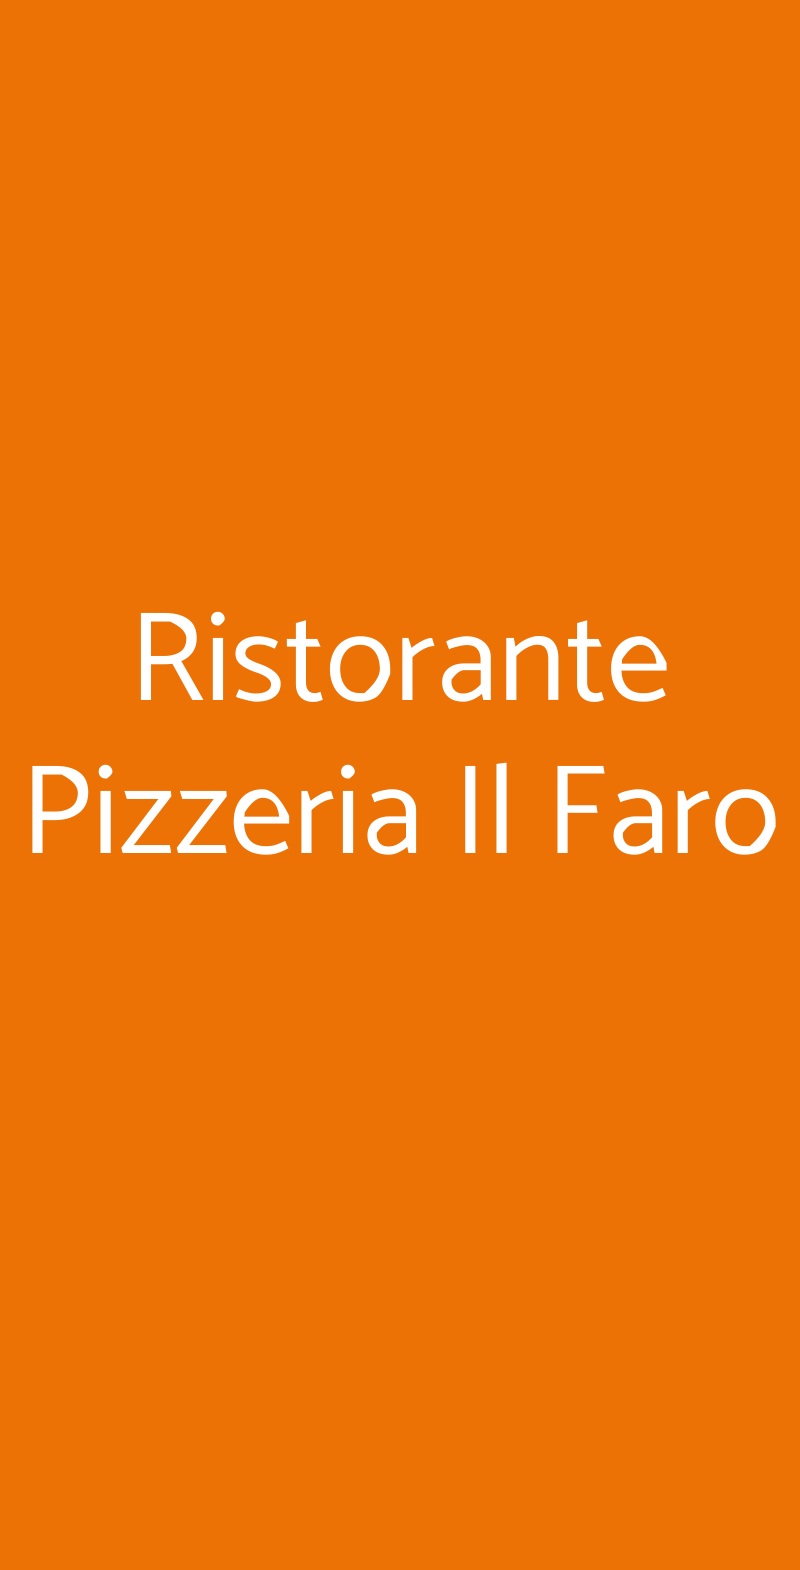 Ristorante Pizzeria Il Faro Milano menù 1 pagina